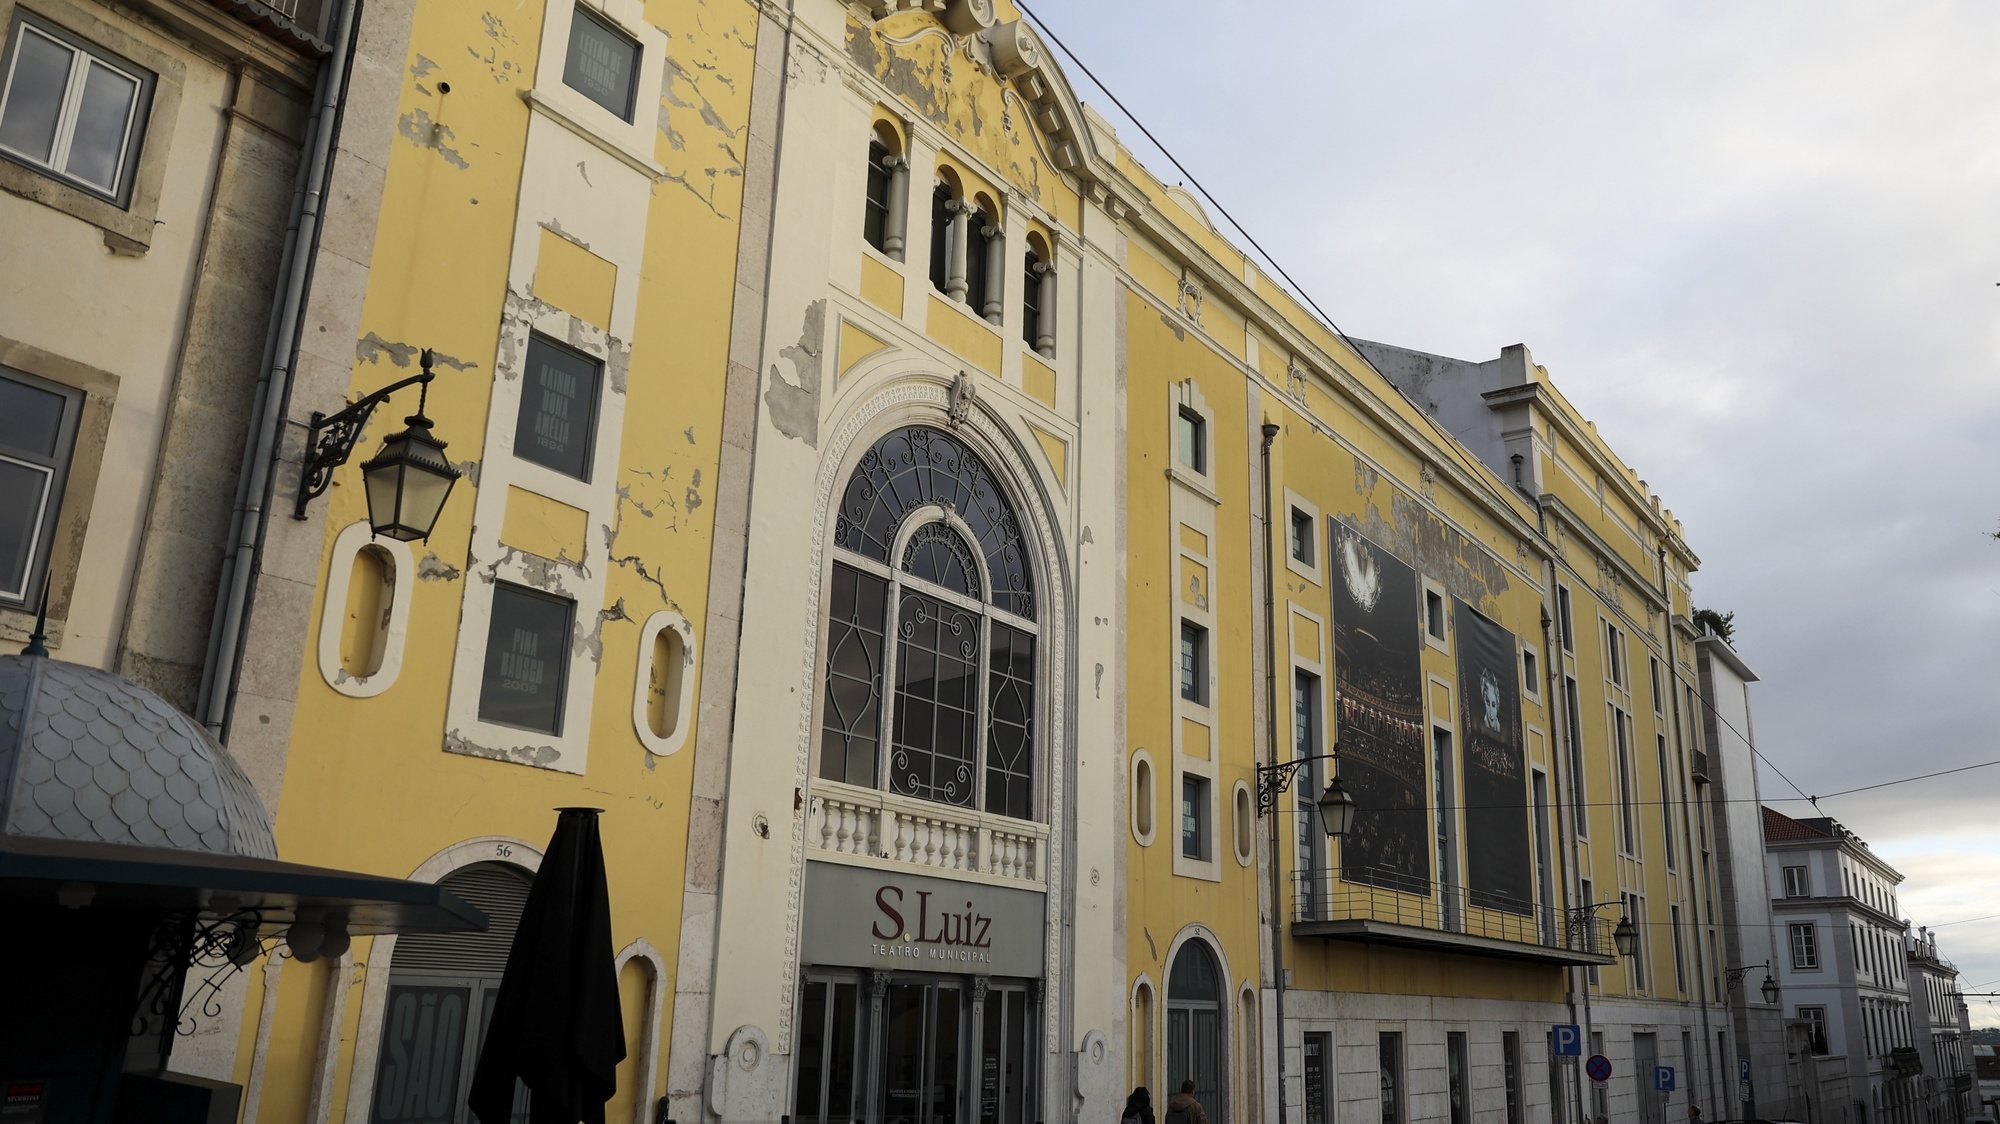 Fachada do edifício do Teatro São Luiz, Lisboa, 10 de janeiro de 2023. CARLOS M. ALMEIDA/LUSA